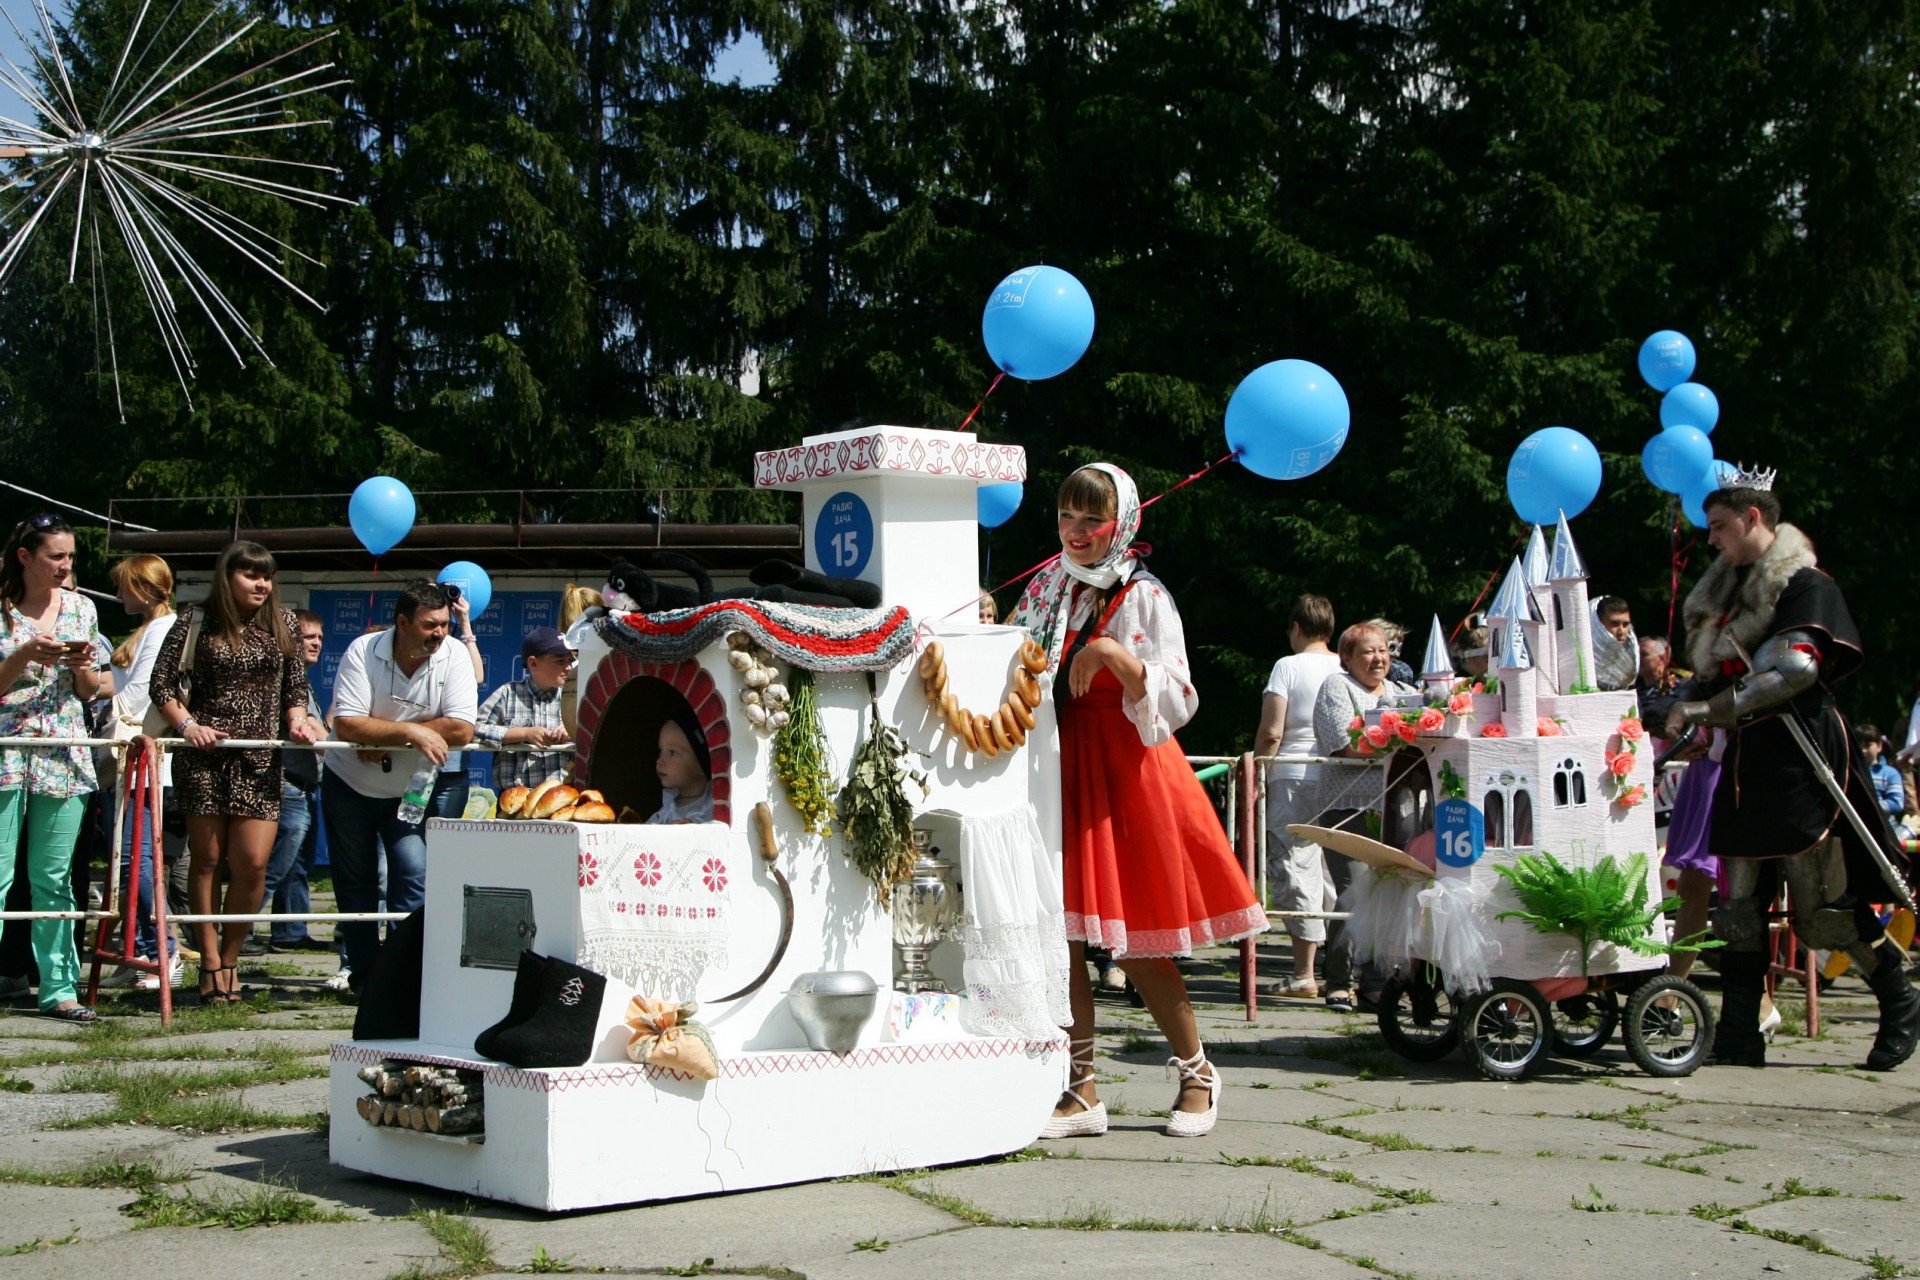 На «Параде колясок» в Кемерове показали коляски в виде печки и замка